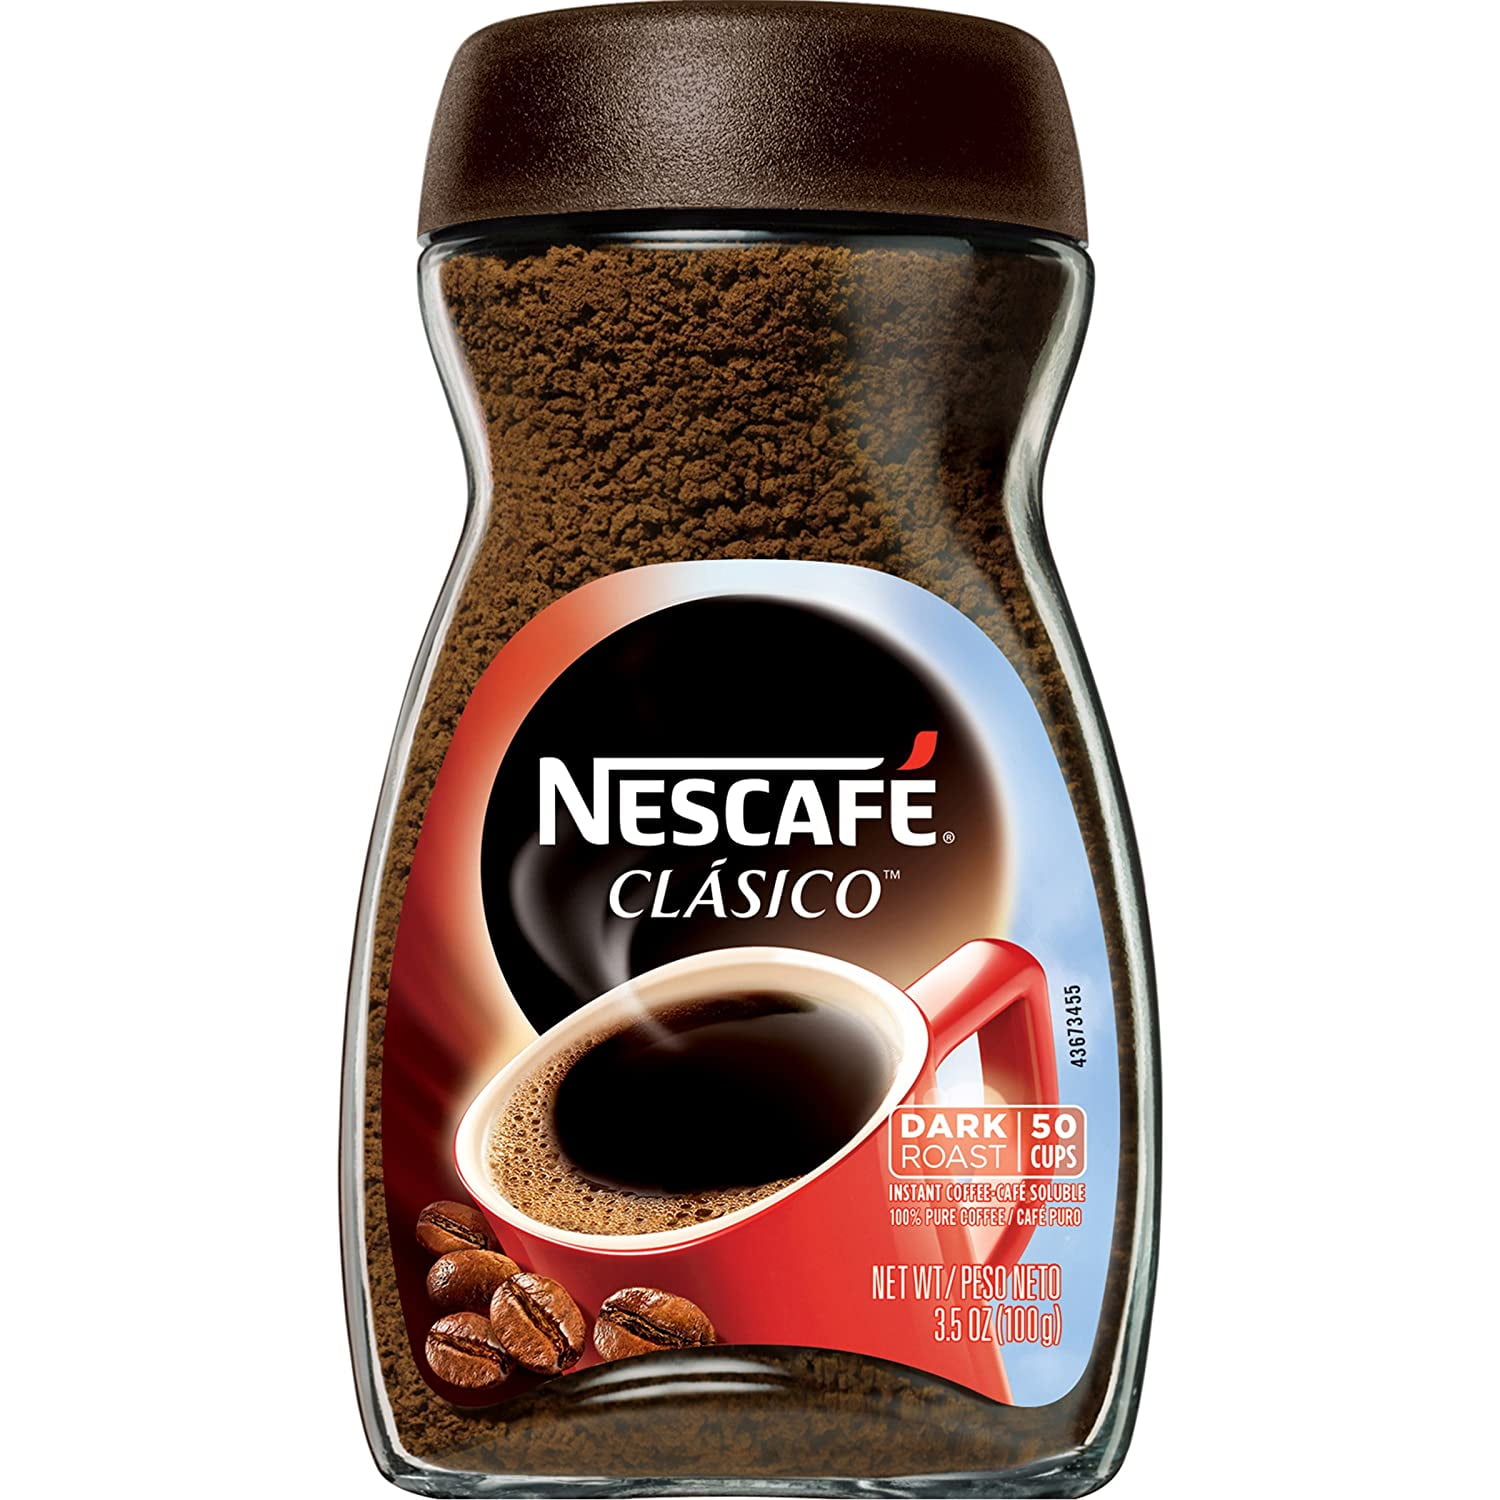 Nescafe Clasico, 3.5-Ounce Jar - Walmart.com